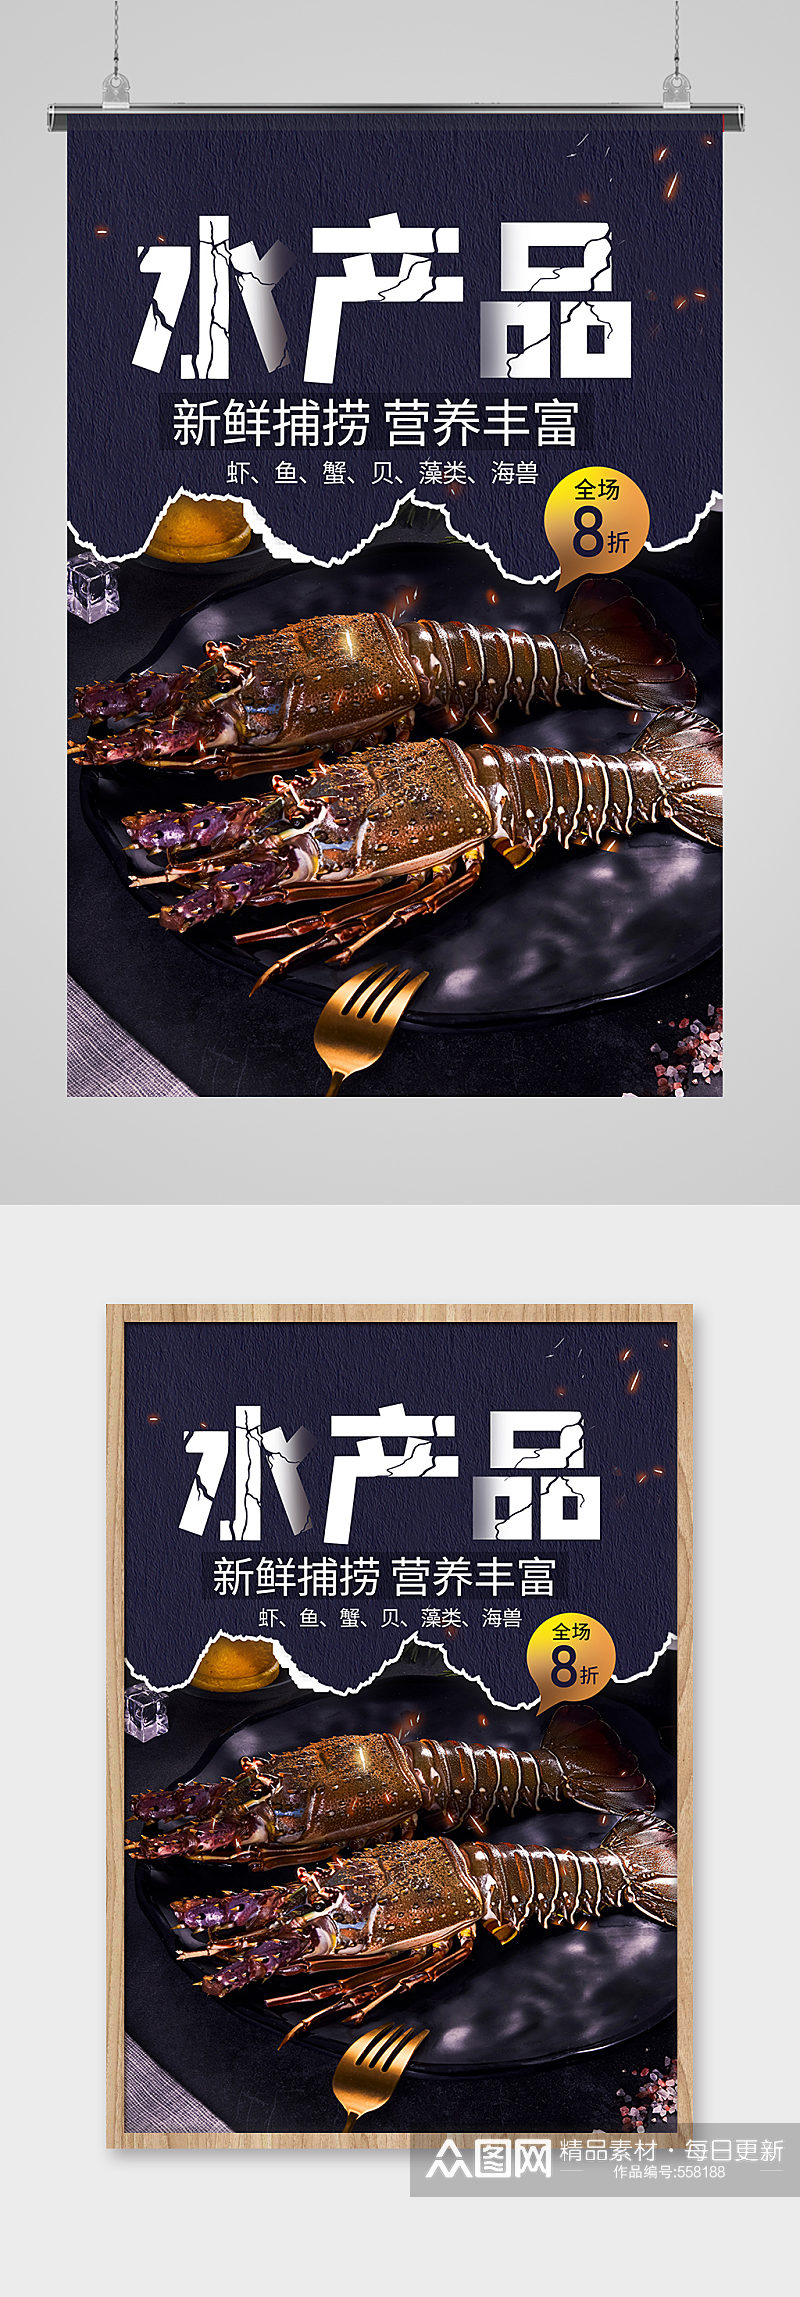 海鲜水产品龙虾美食海报素材